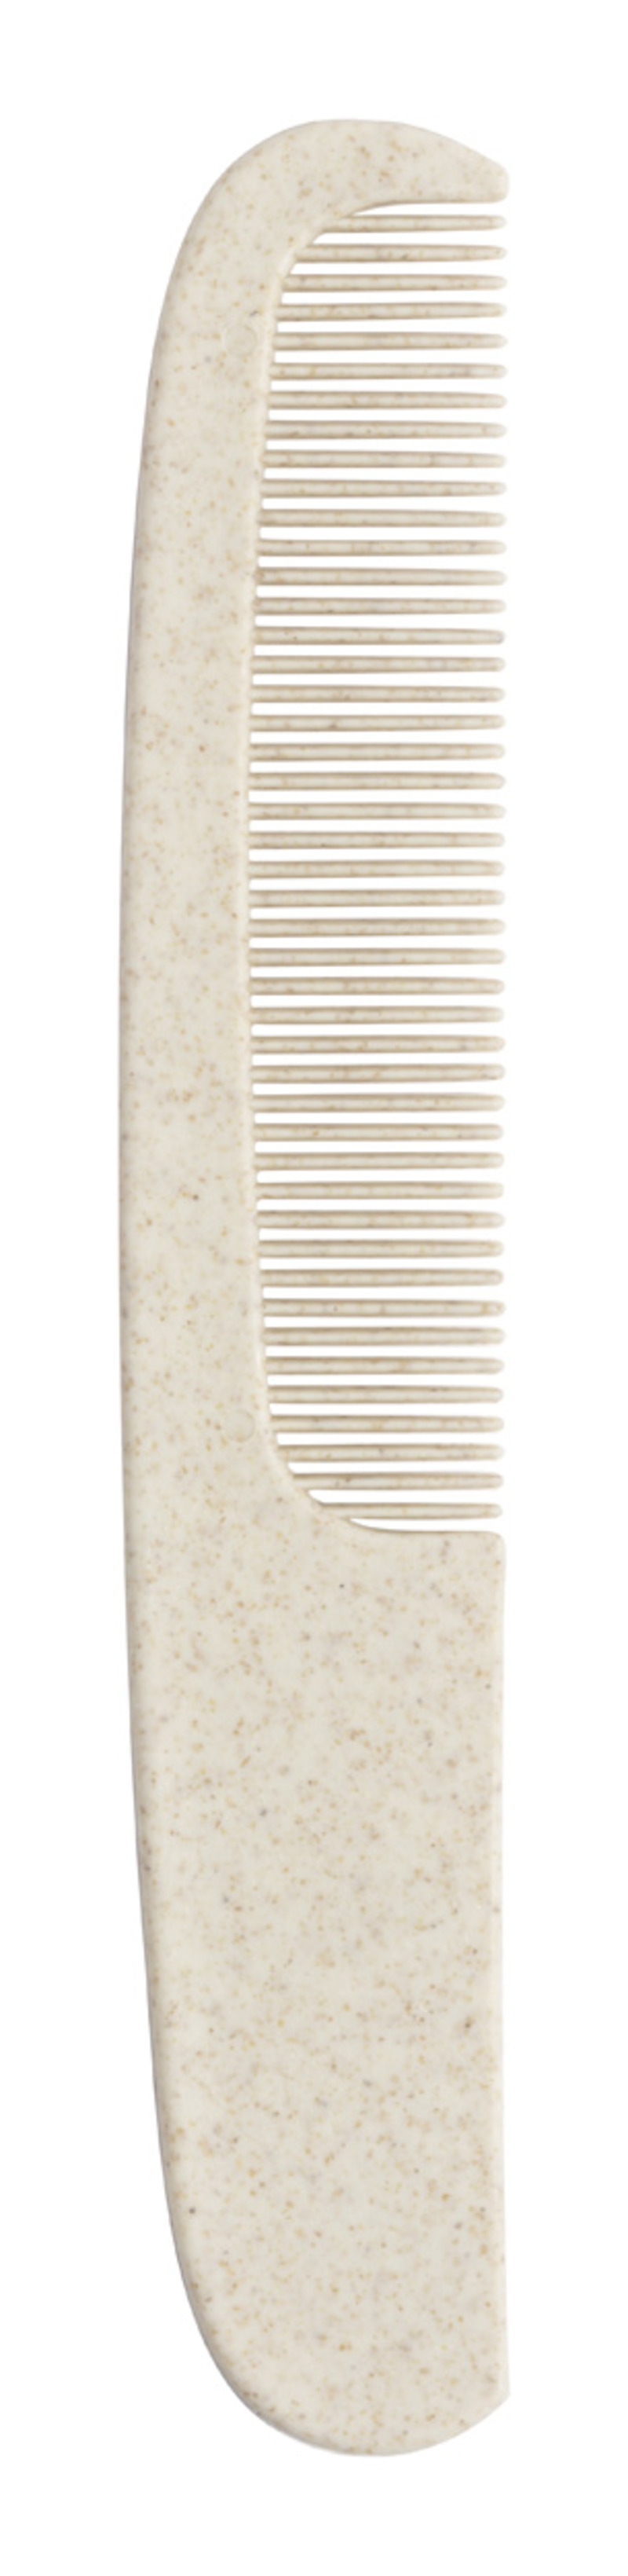 Wofel comb